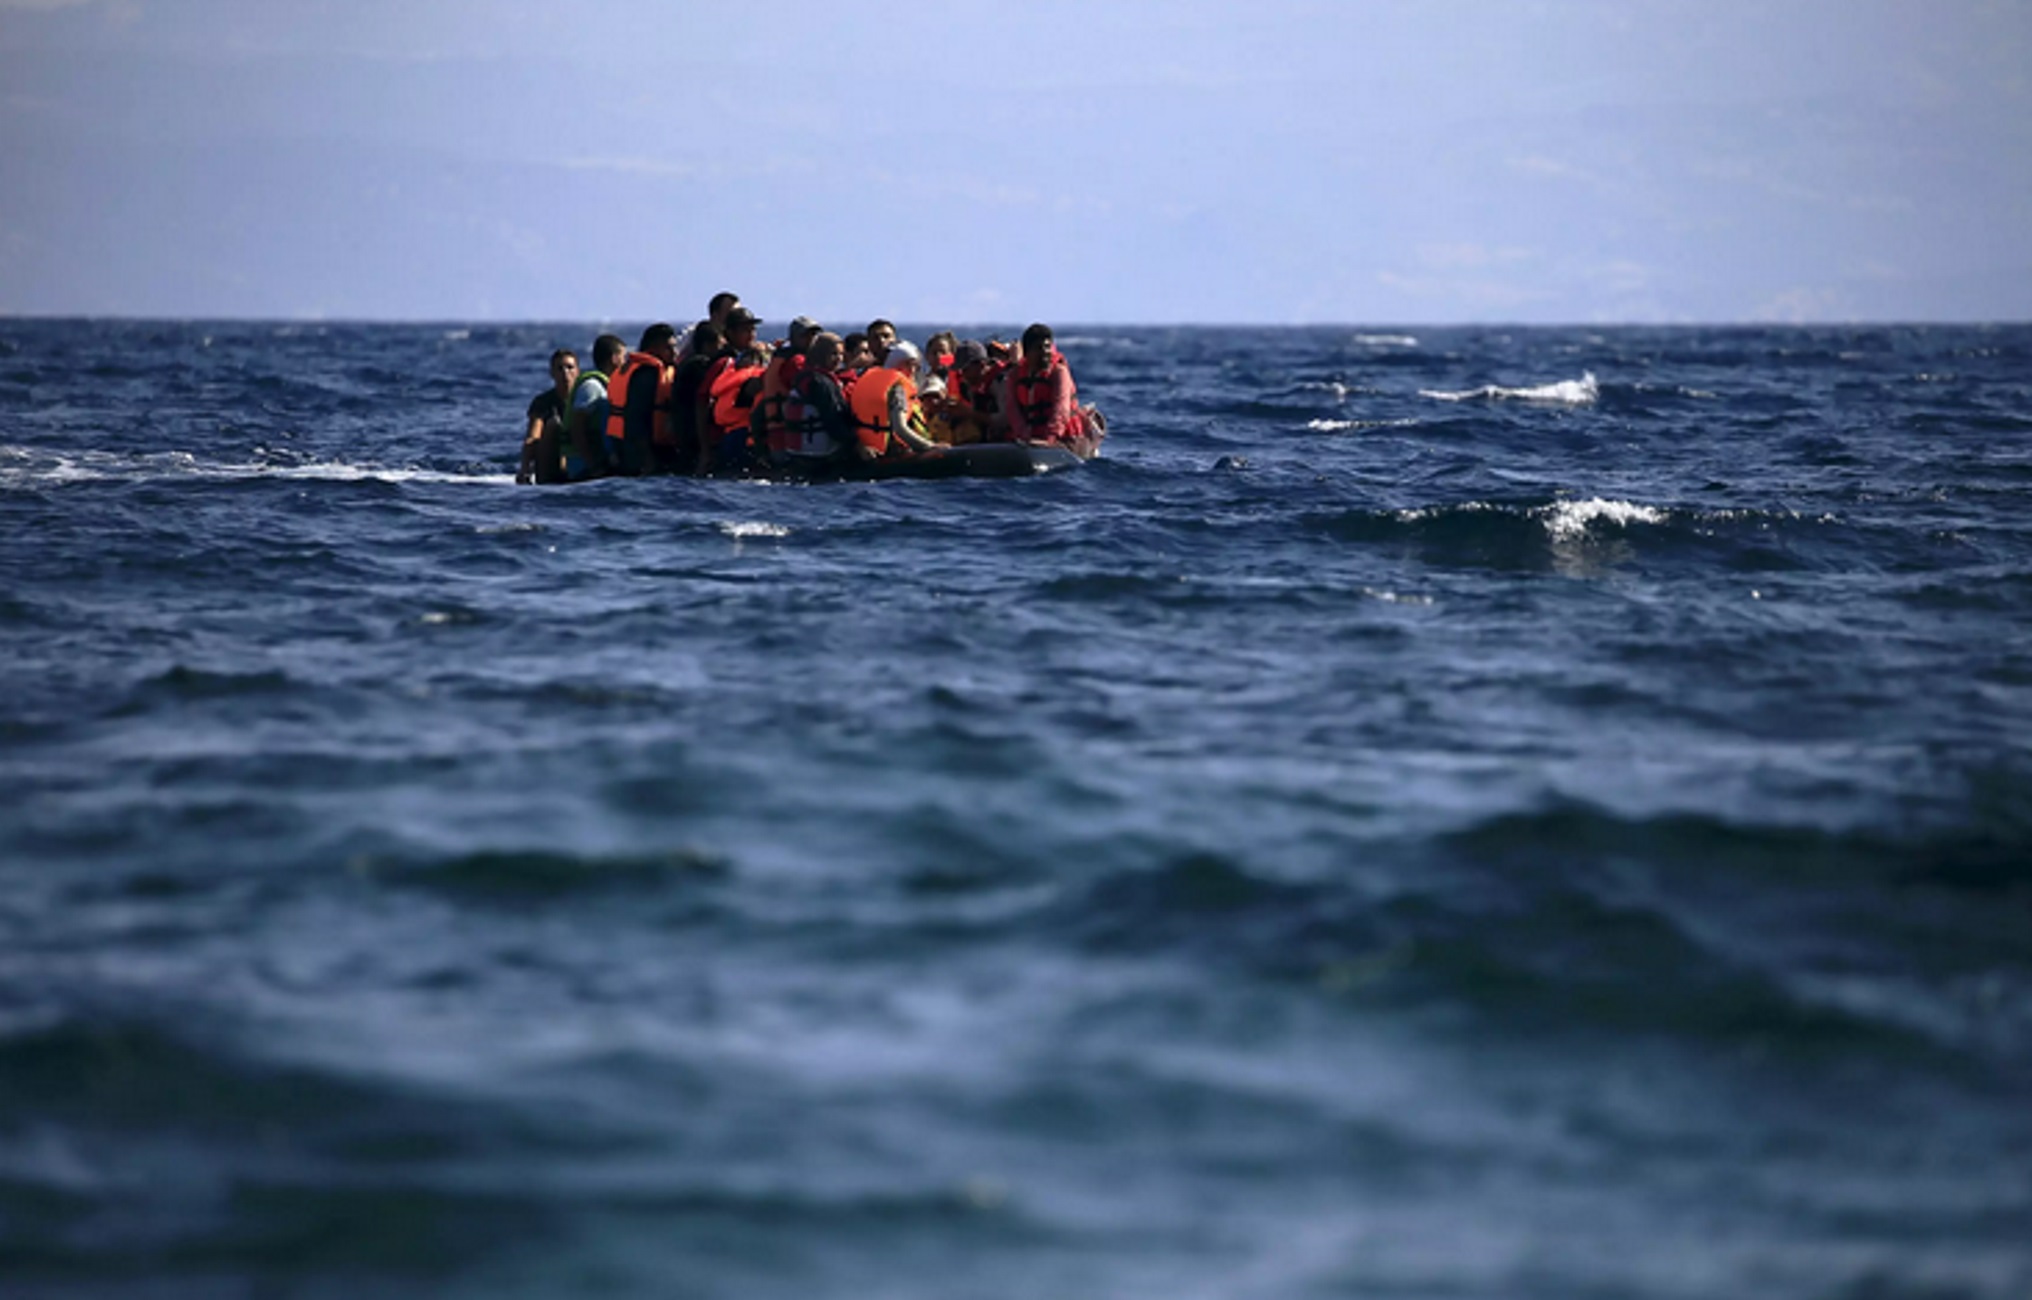 Κάρπαθος: Επιχείρηση διάσωσης για 79 πρόσφυγες και μετανάστες πάνω σε ιστιοφόρο